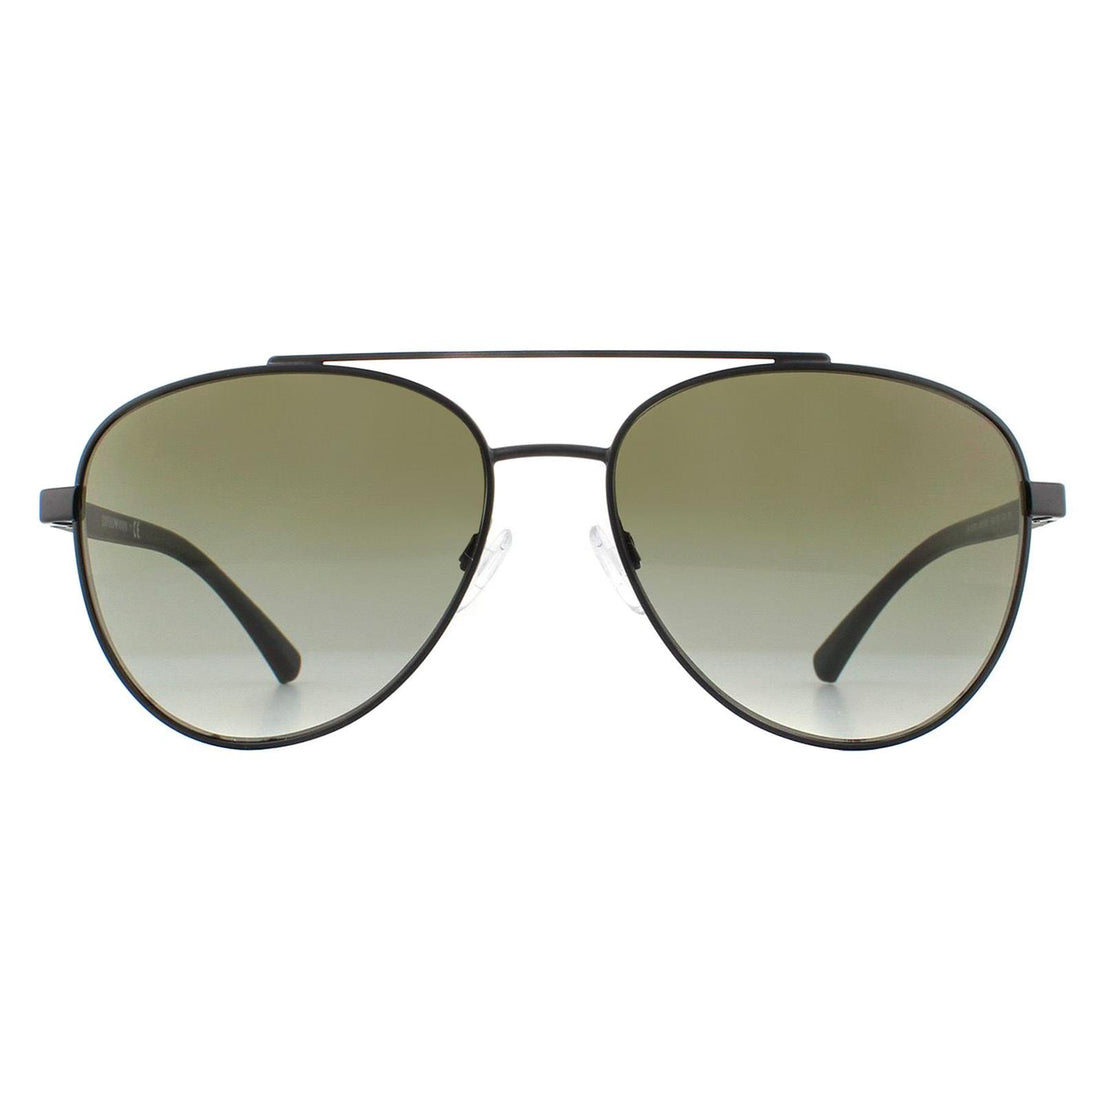 Emporio Armani EA2079 Sunglasses